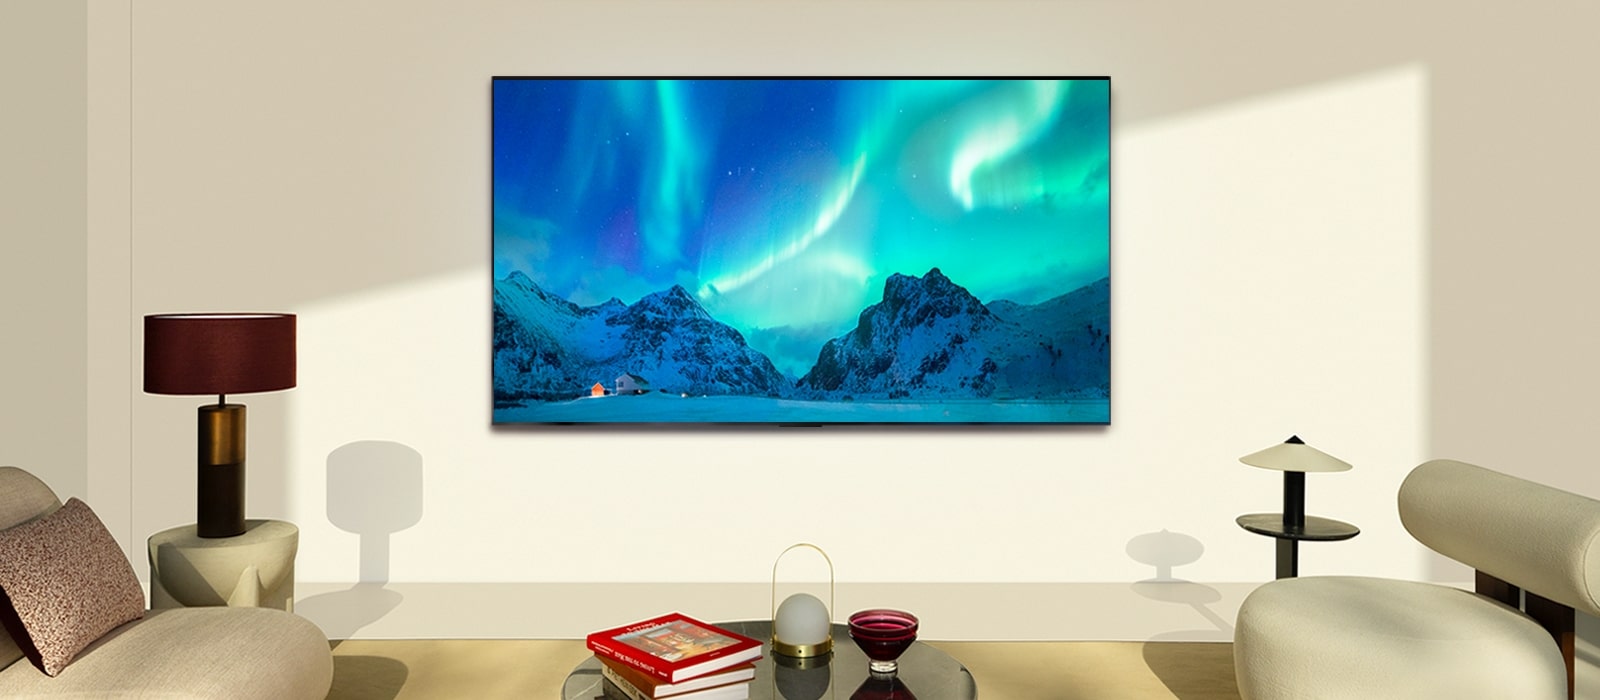 LG OLED TV og LG Soundbar i en moderne stue på dagtid. Skjermbildet av nordlyset vises med ideelle lysnivåer.